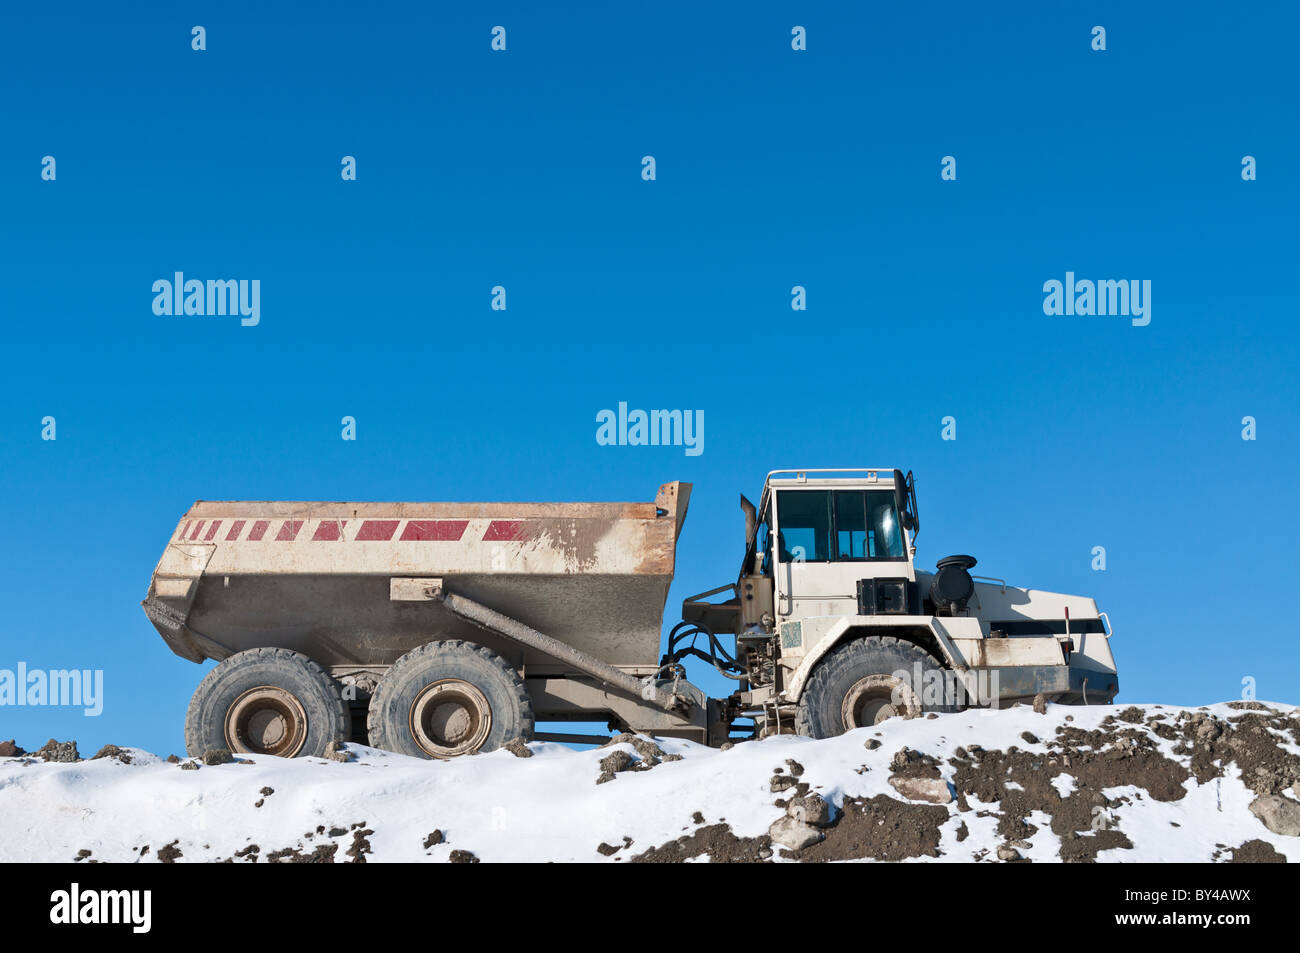 Un camion-benne se trouve au sommet d'un tas de terre sur un site de construction en hiver. Banque D'Images